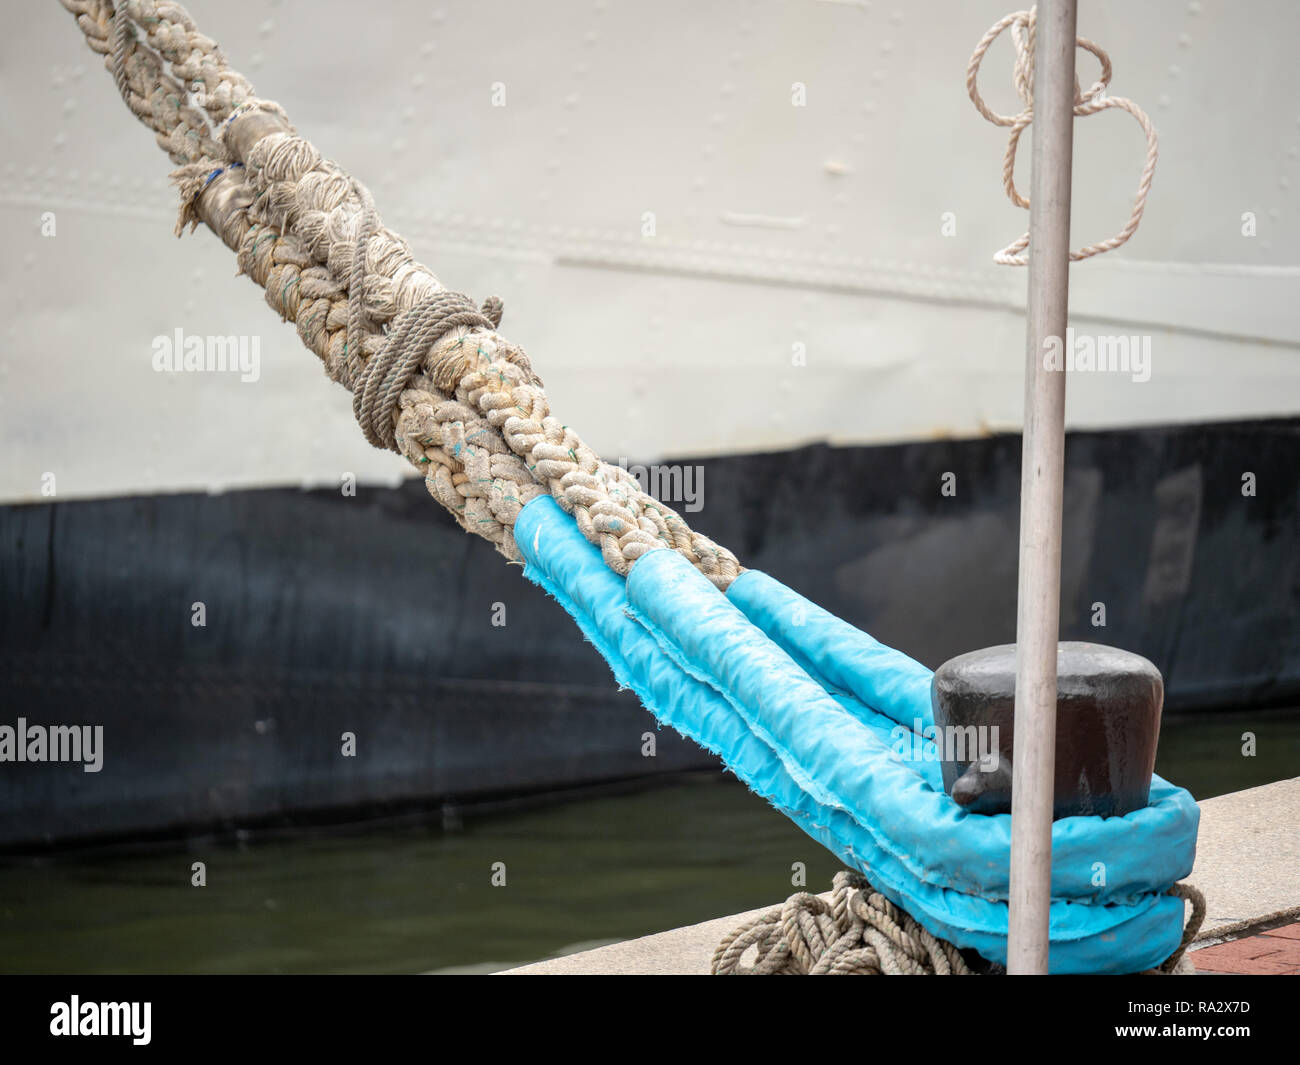 Des câbles de navire à l'aide de bornes d'ancrer la corde de marin à quai Banque D'Images